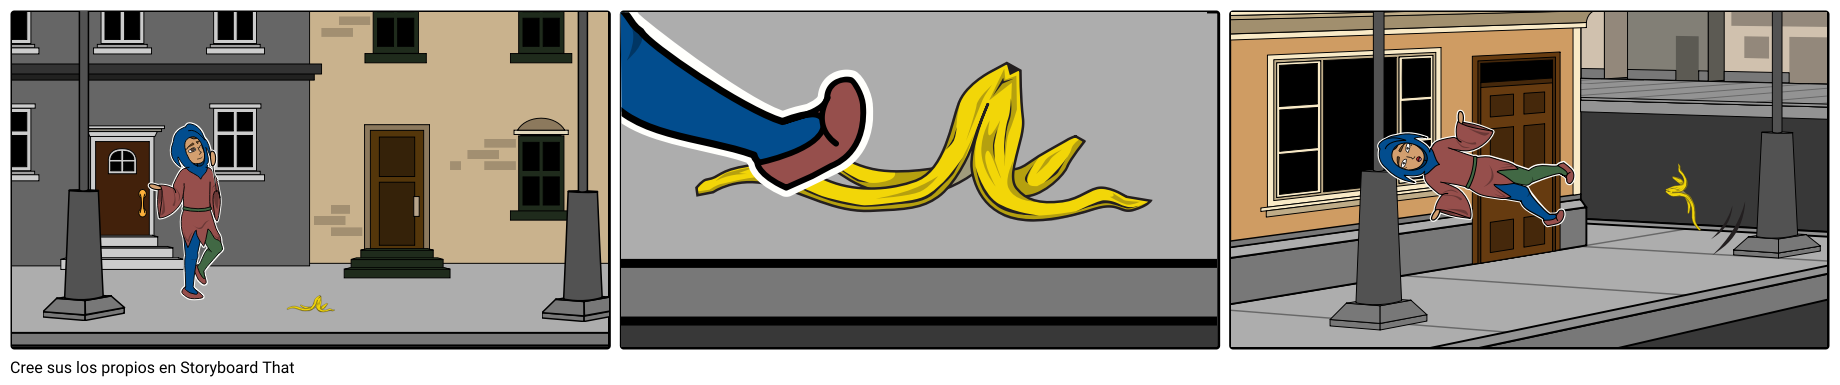 Jester se desliza en la cáscara del plátano